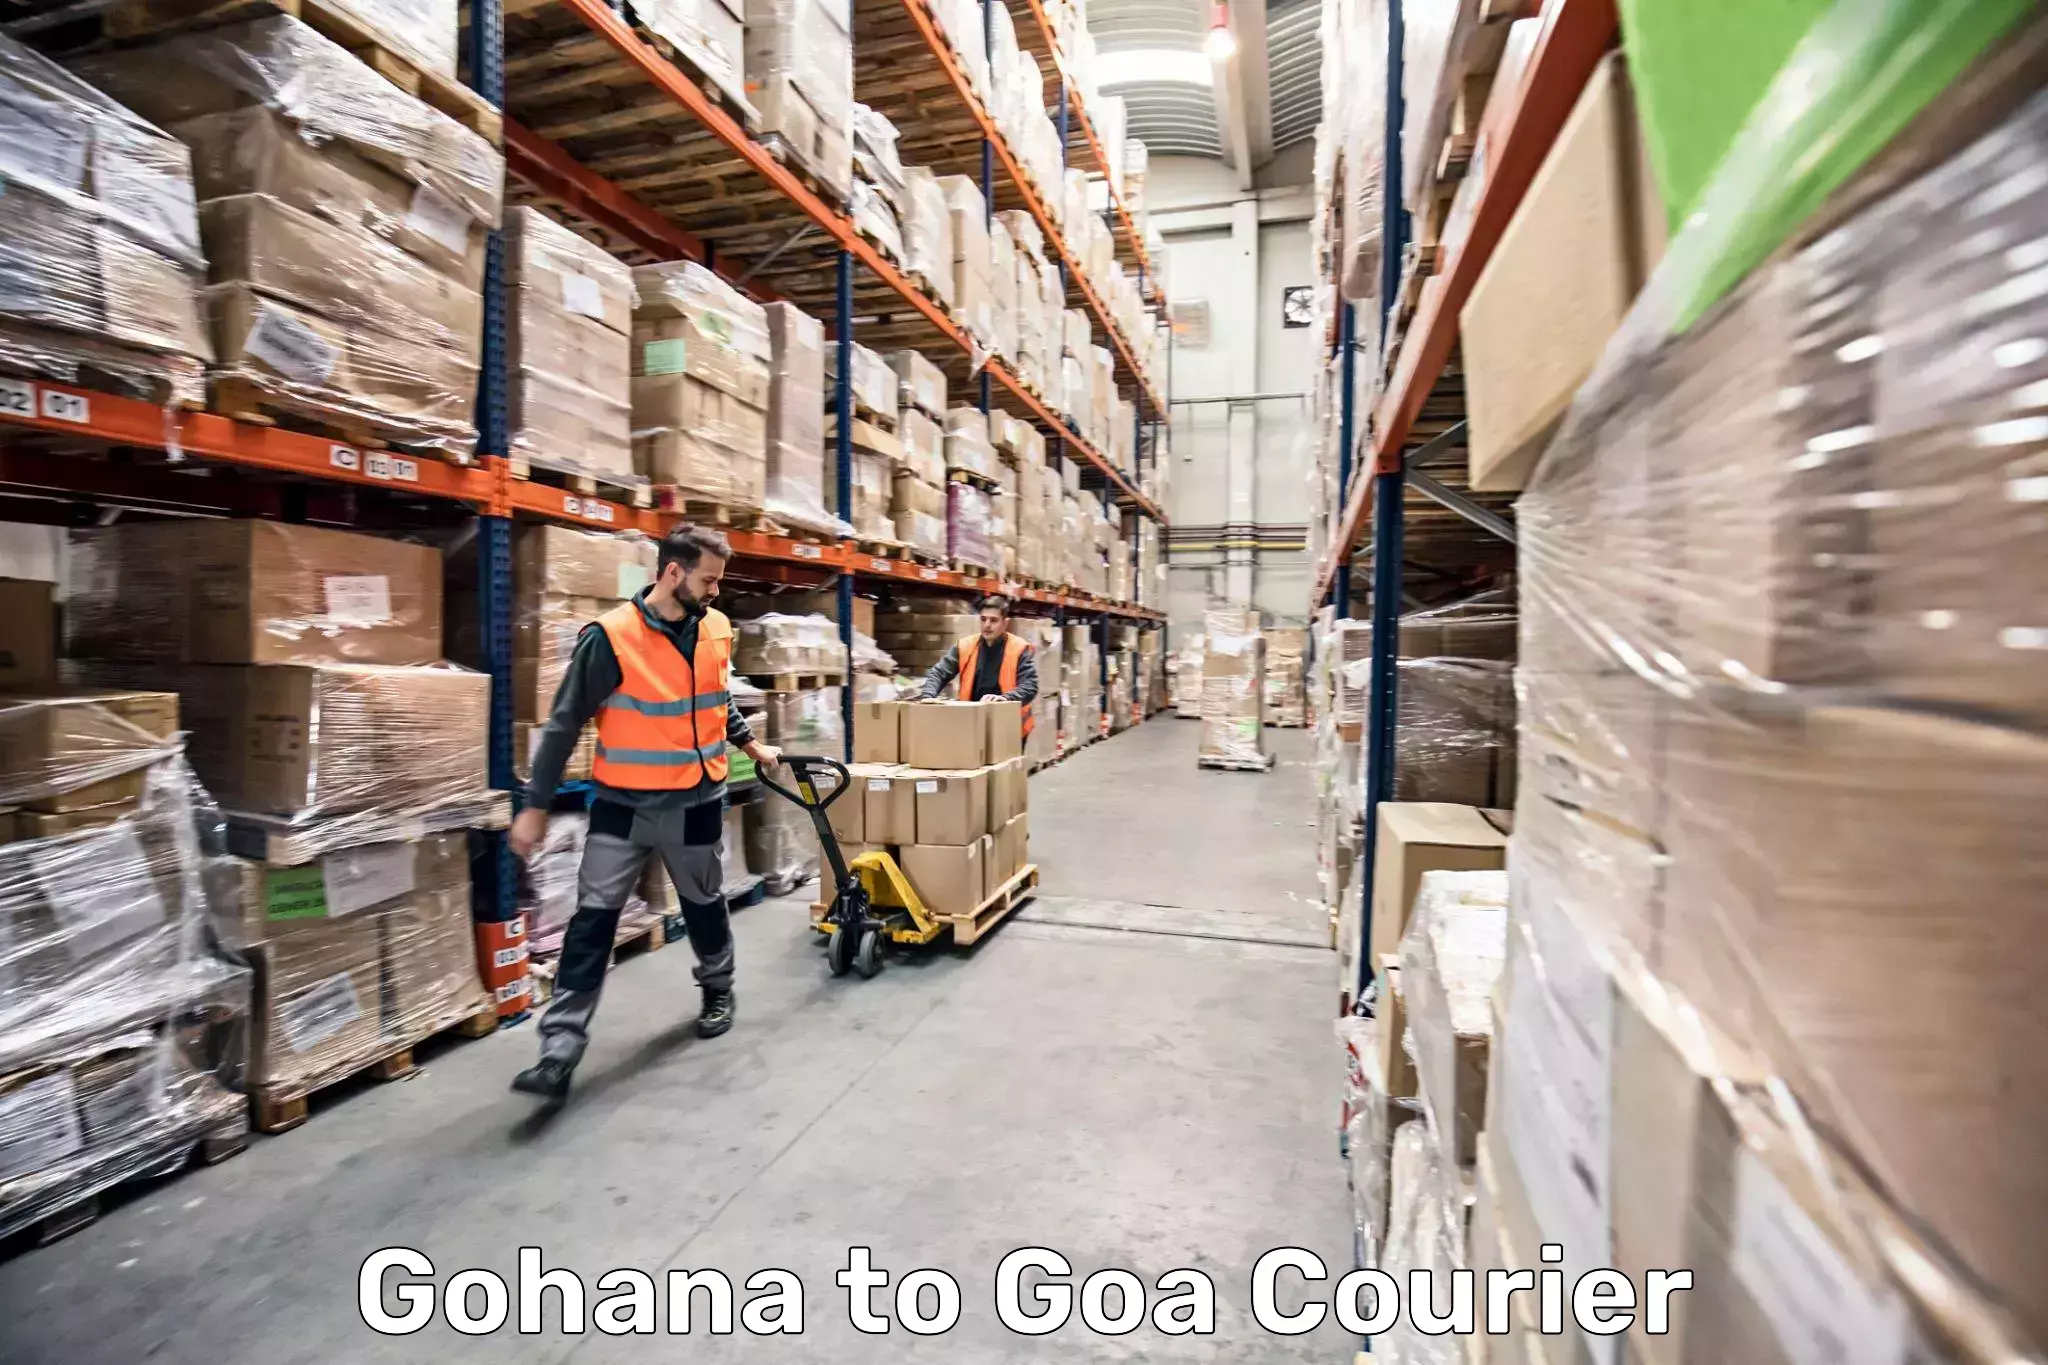 Luggage transport tips Gohana to Goa